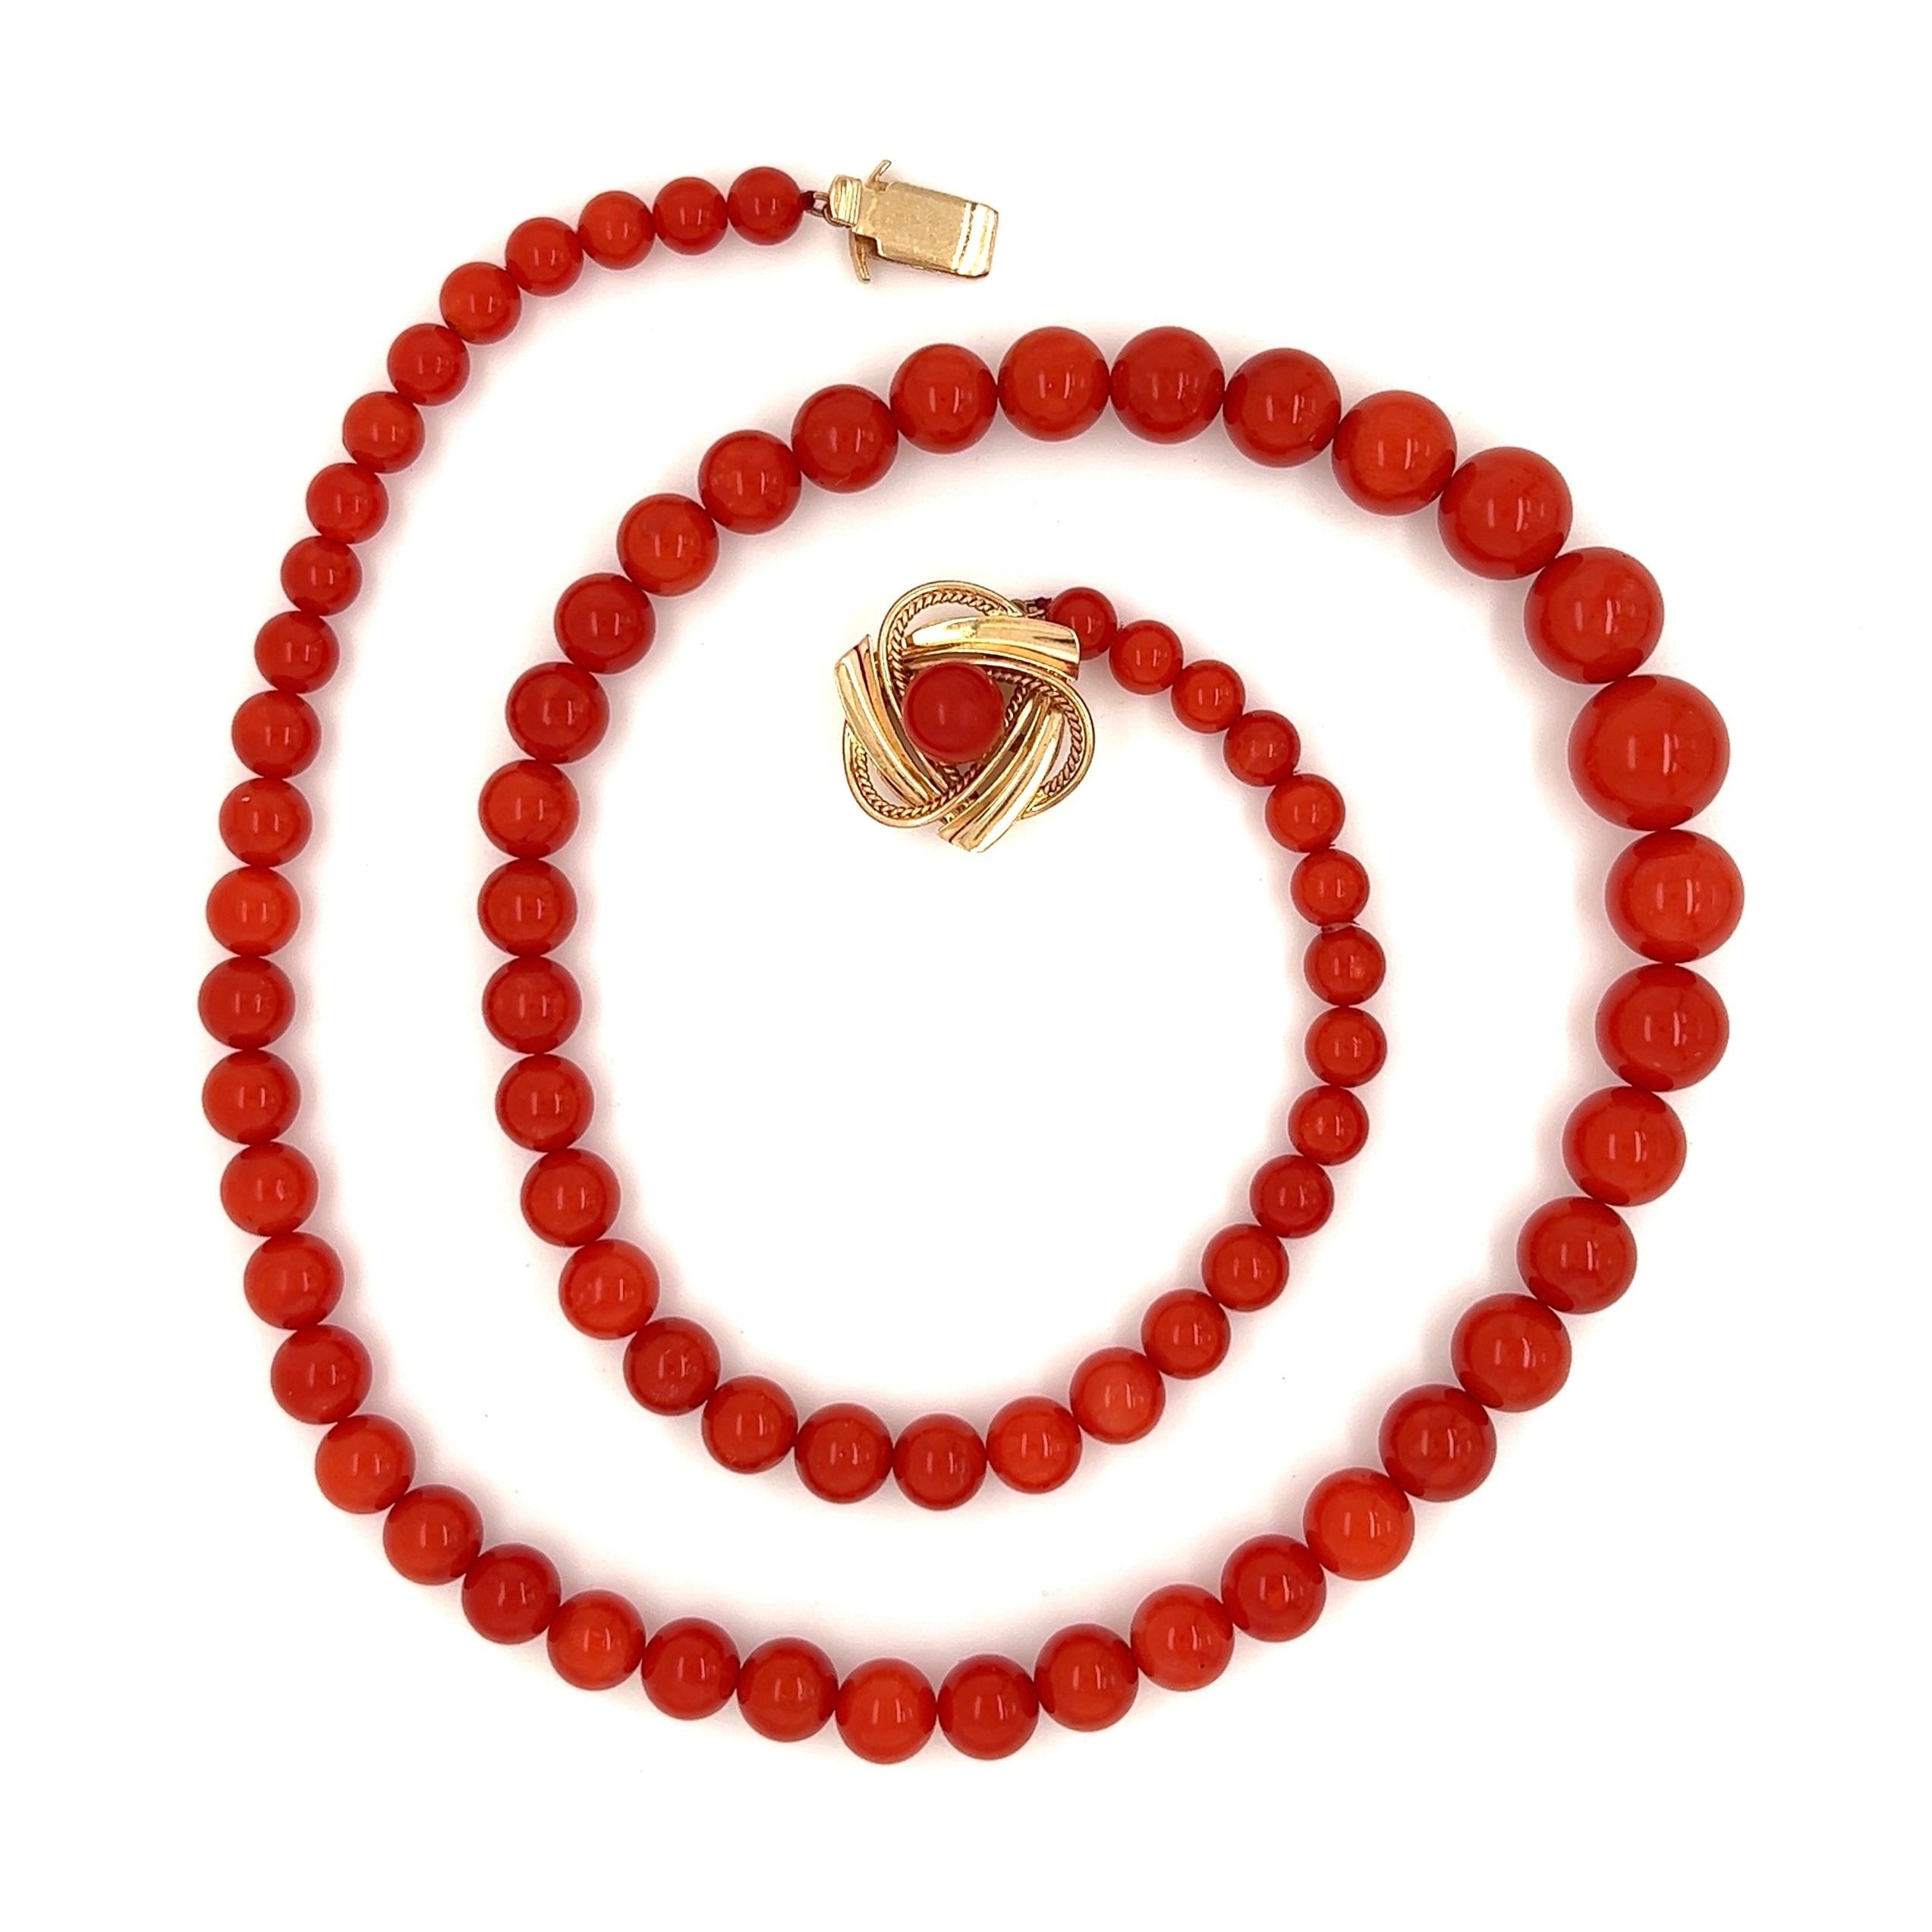 Einfach schön! Natürliche rote Korallenperlen, ca. 10,3-5,00 mm groß Halskette. Handgeknüpft mit passendem Garn und mit einem Verschluss aus 14 Karat Gelbgold versehen. Halskette misst ca. 18